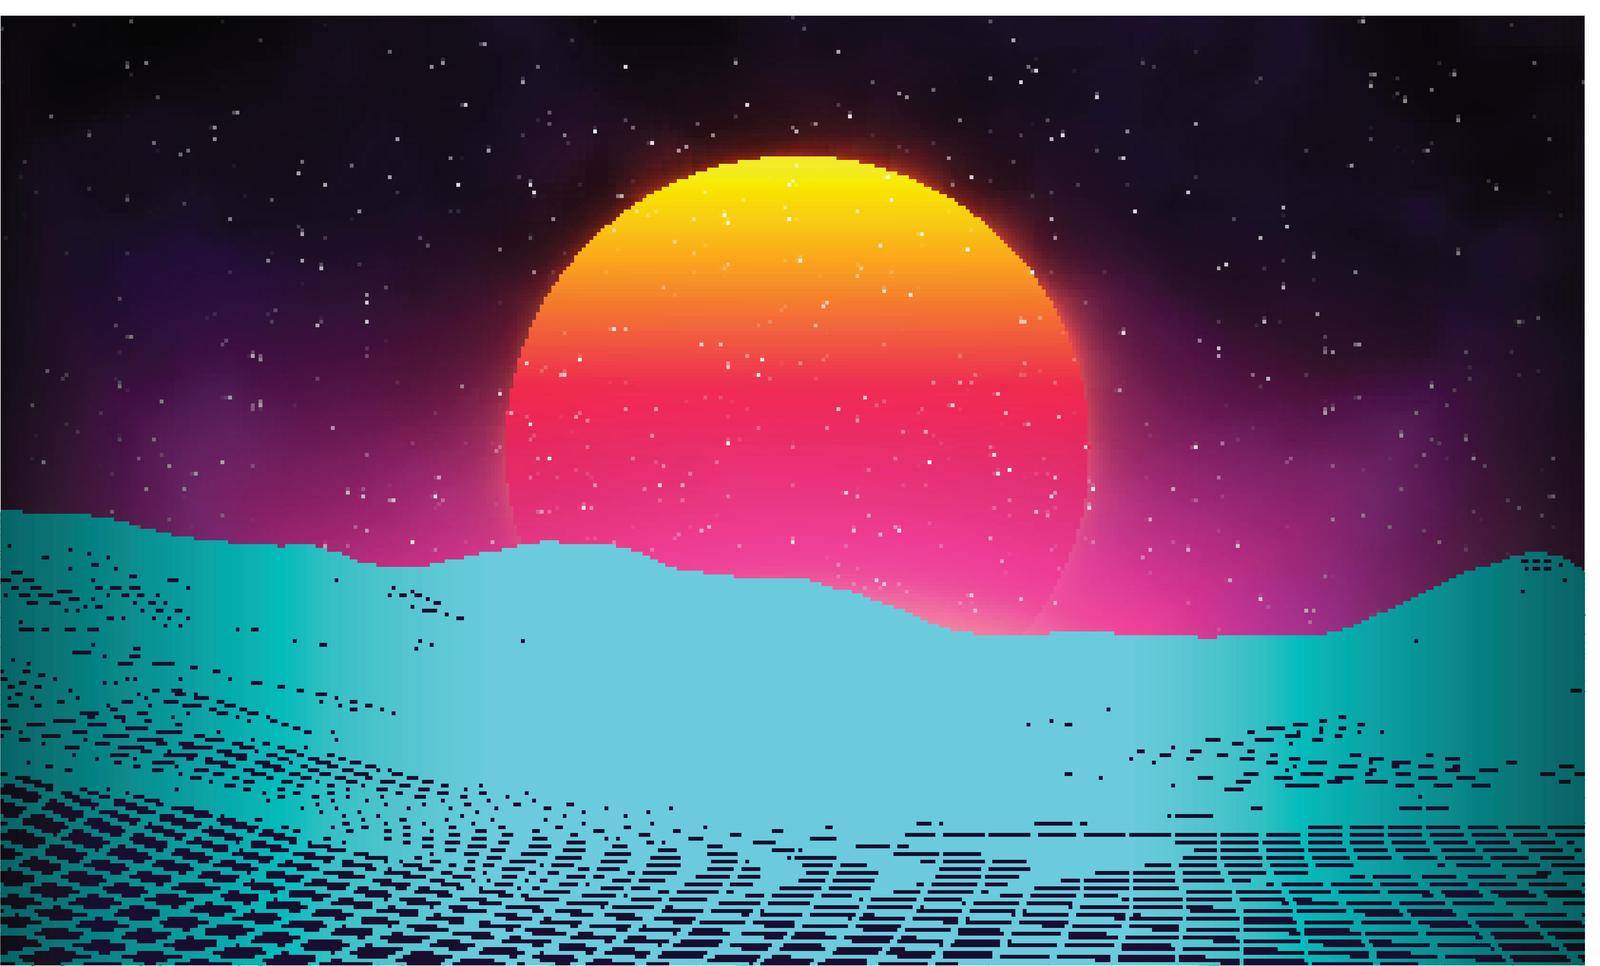 Retro background futuristic landscape 1980s style. Digital retro landscape cyber surface. Retro music album cover template sun, space, mountains . 80s Retro Sci-Fi Background Summer Landscape. by DmytroRazinkov